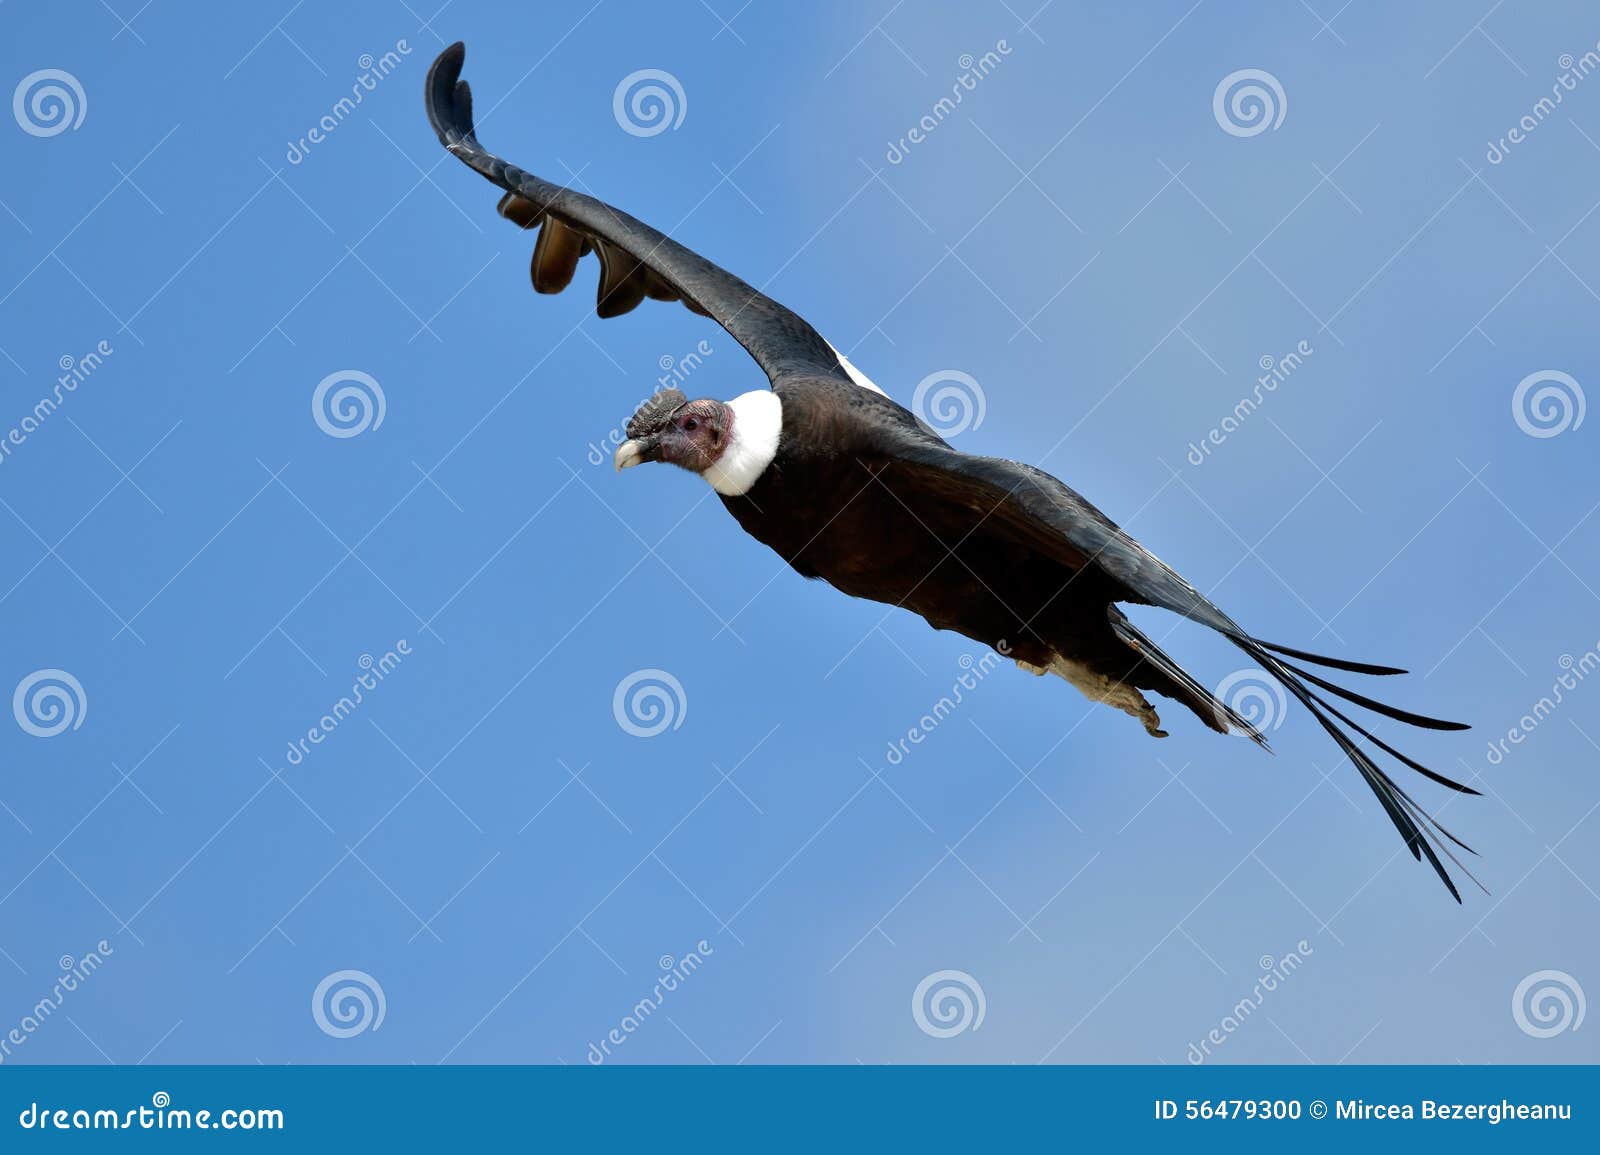 andean condor (vultur gryphus) flying